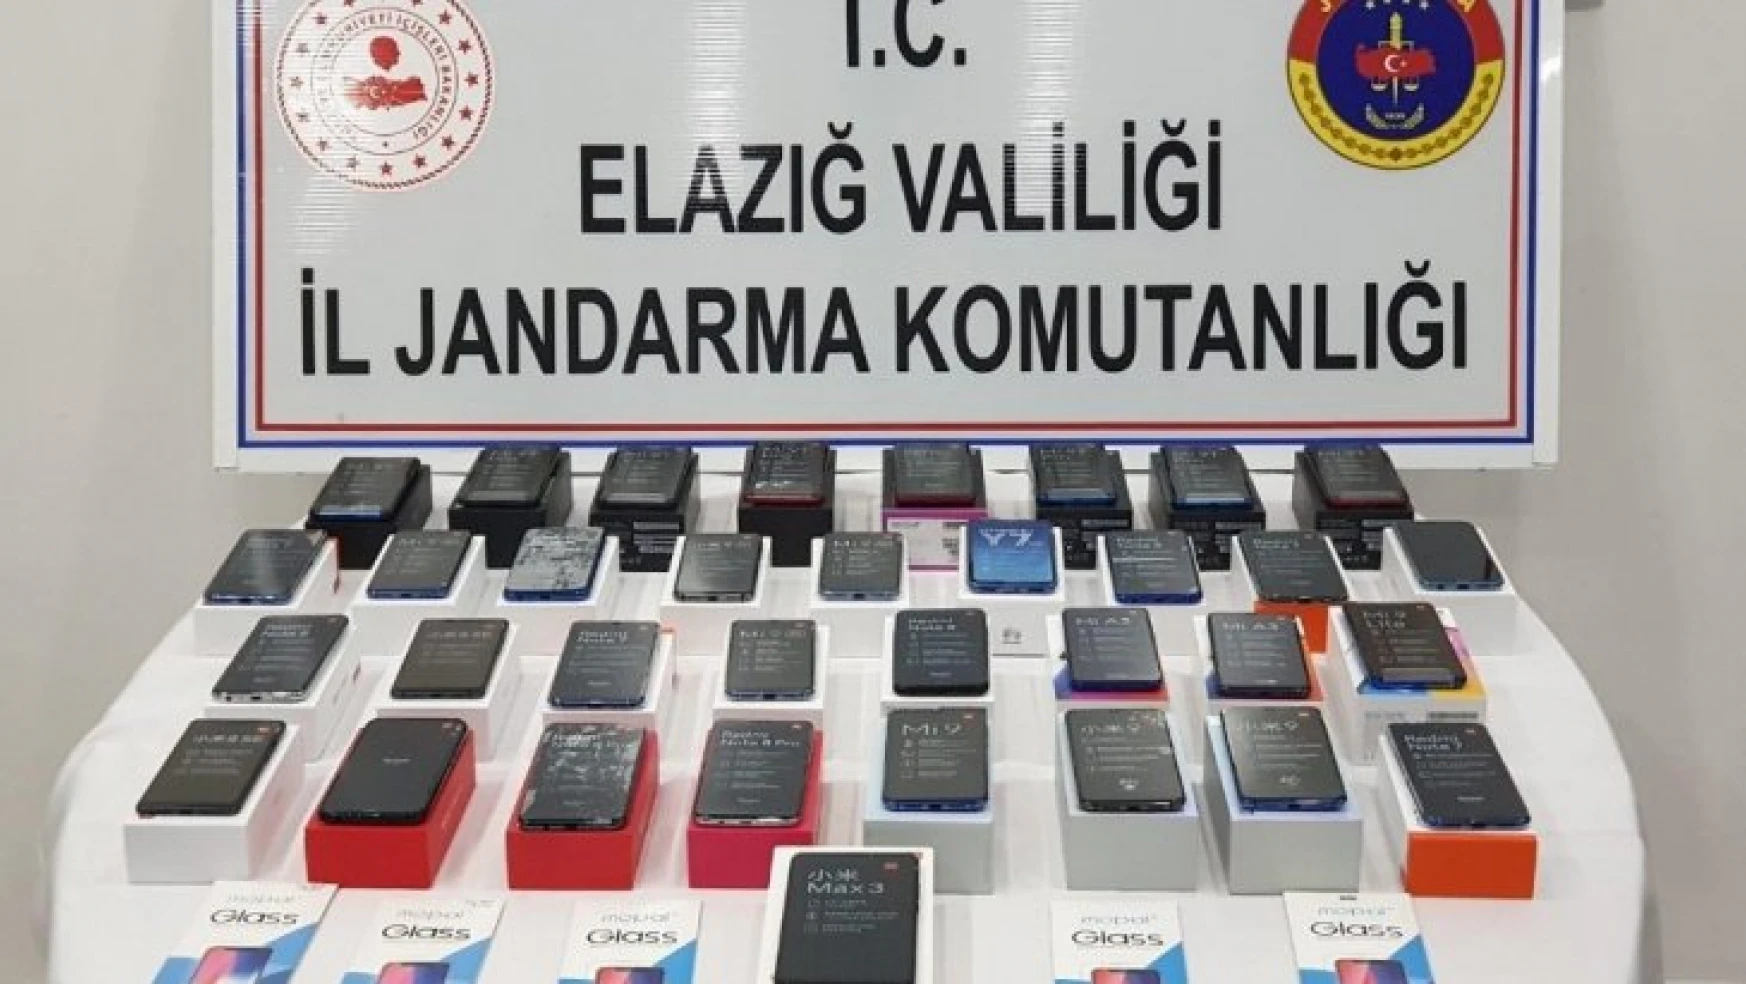 Elazığ'da 34 adet kaçak telefon elegeçirildi